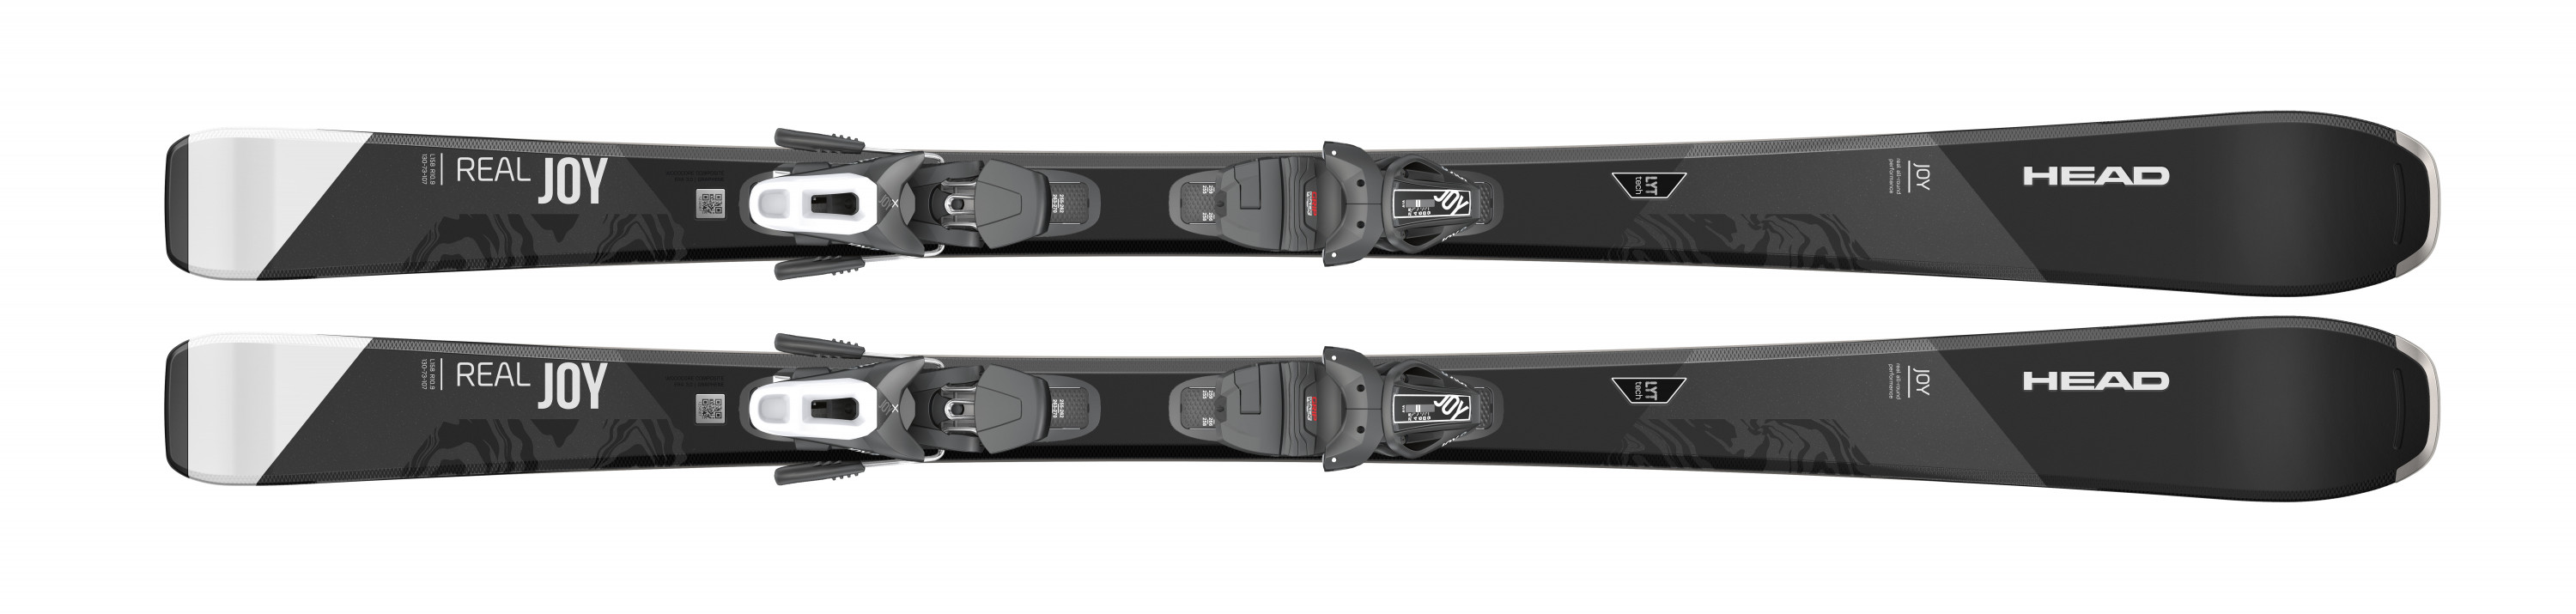 Горные лыжи Head Real Joy SLR Joy Pro + Joy 9 GW SLR 2022 black, 143 см